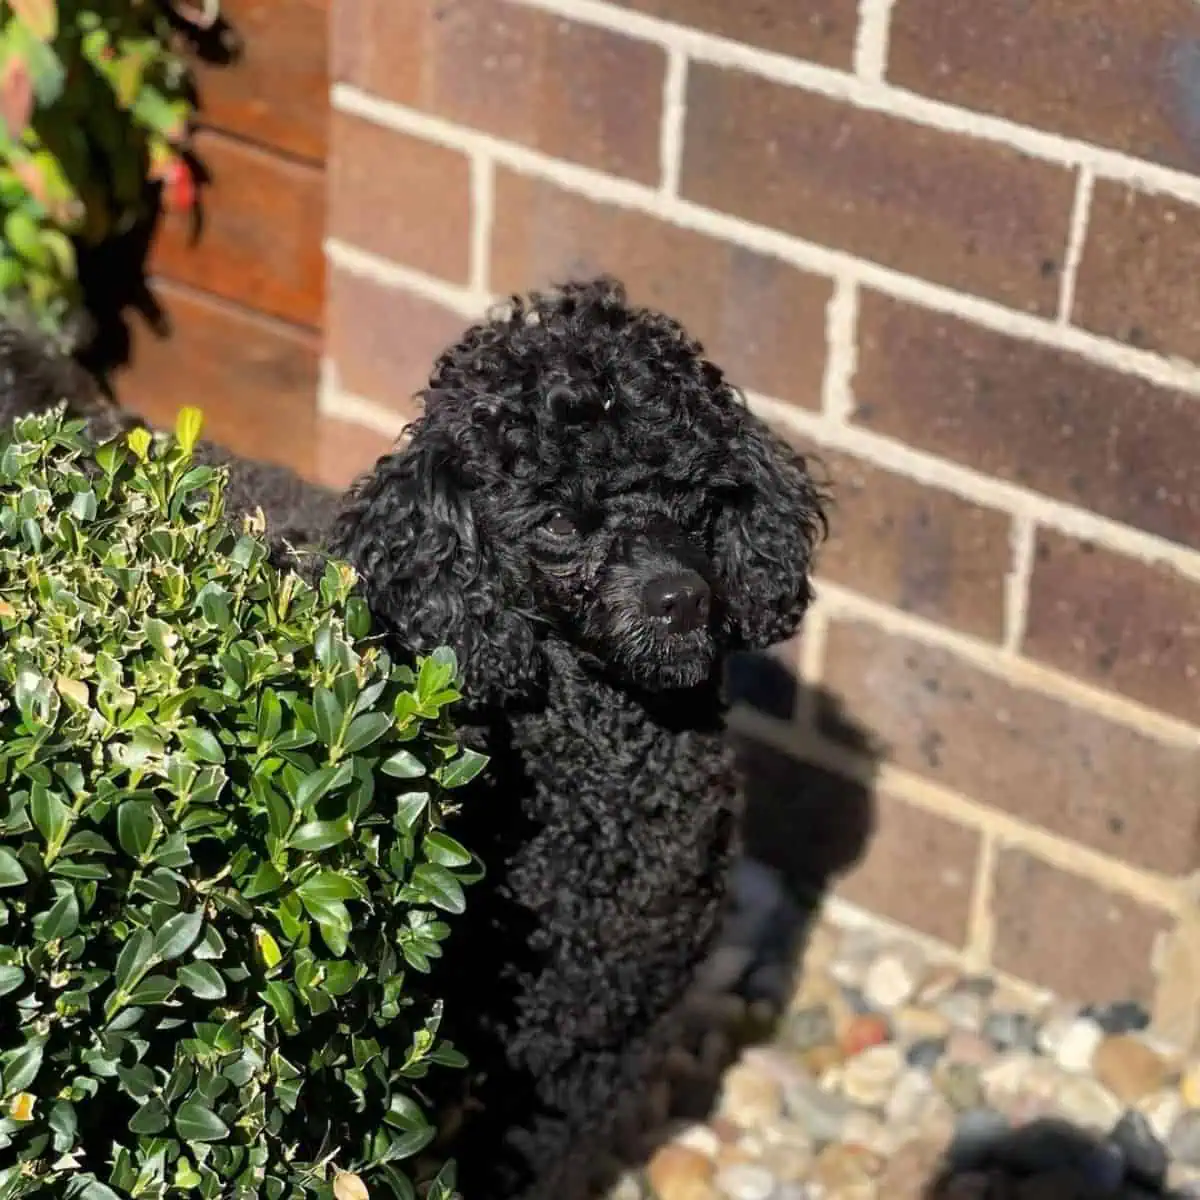 Poodle hiding behind the bush